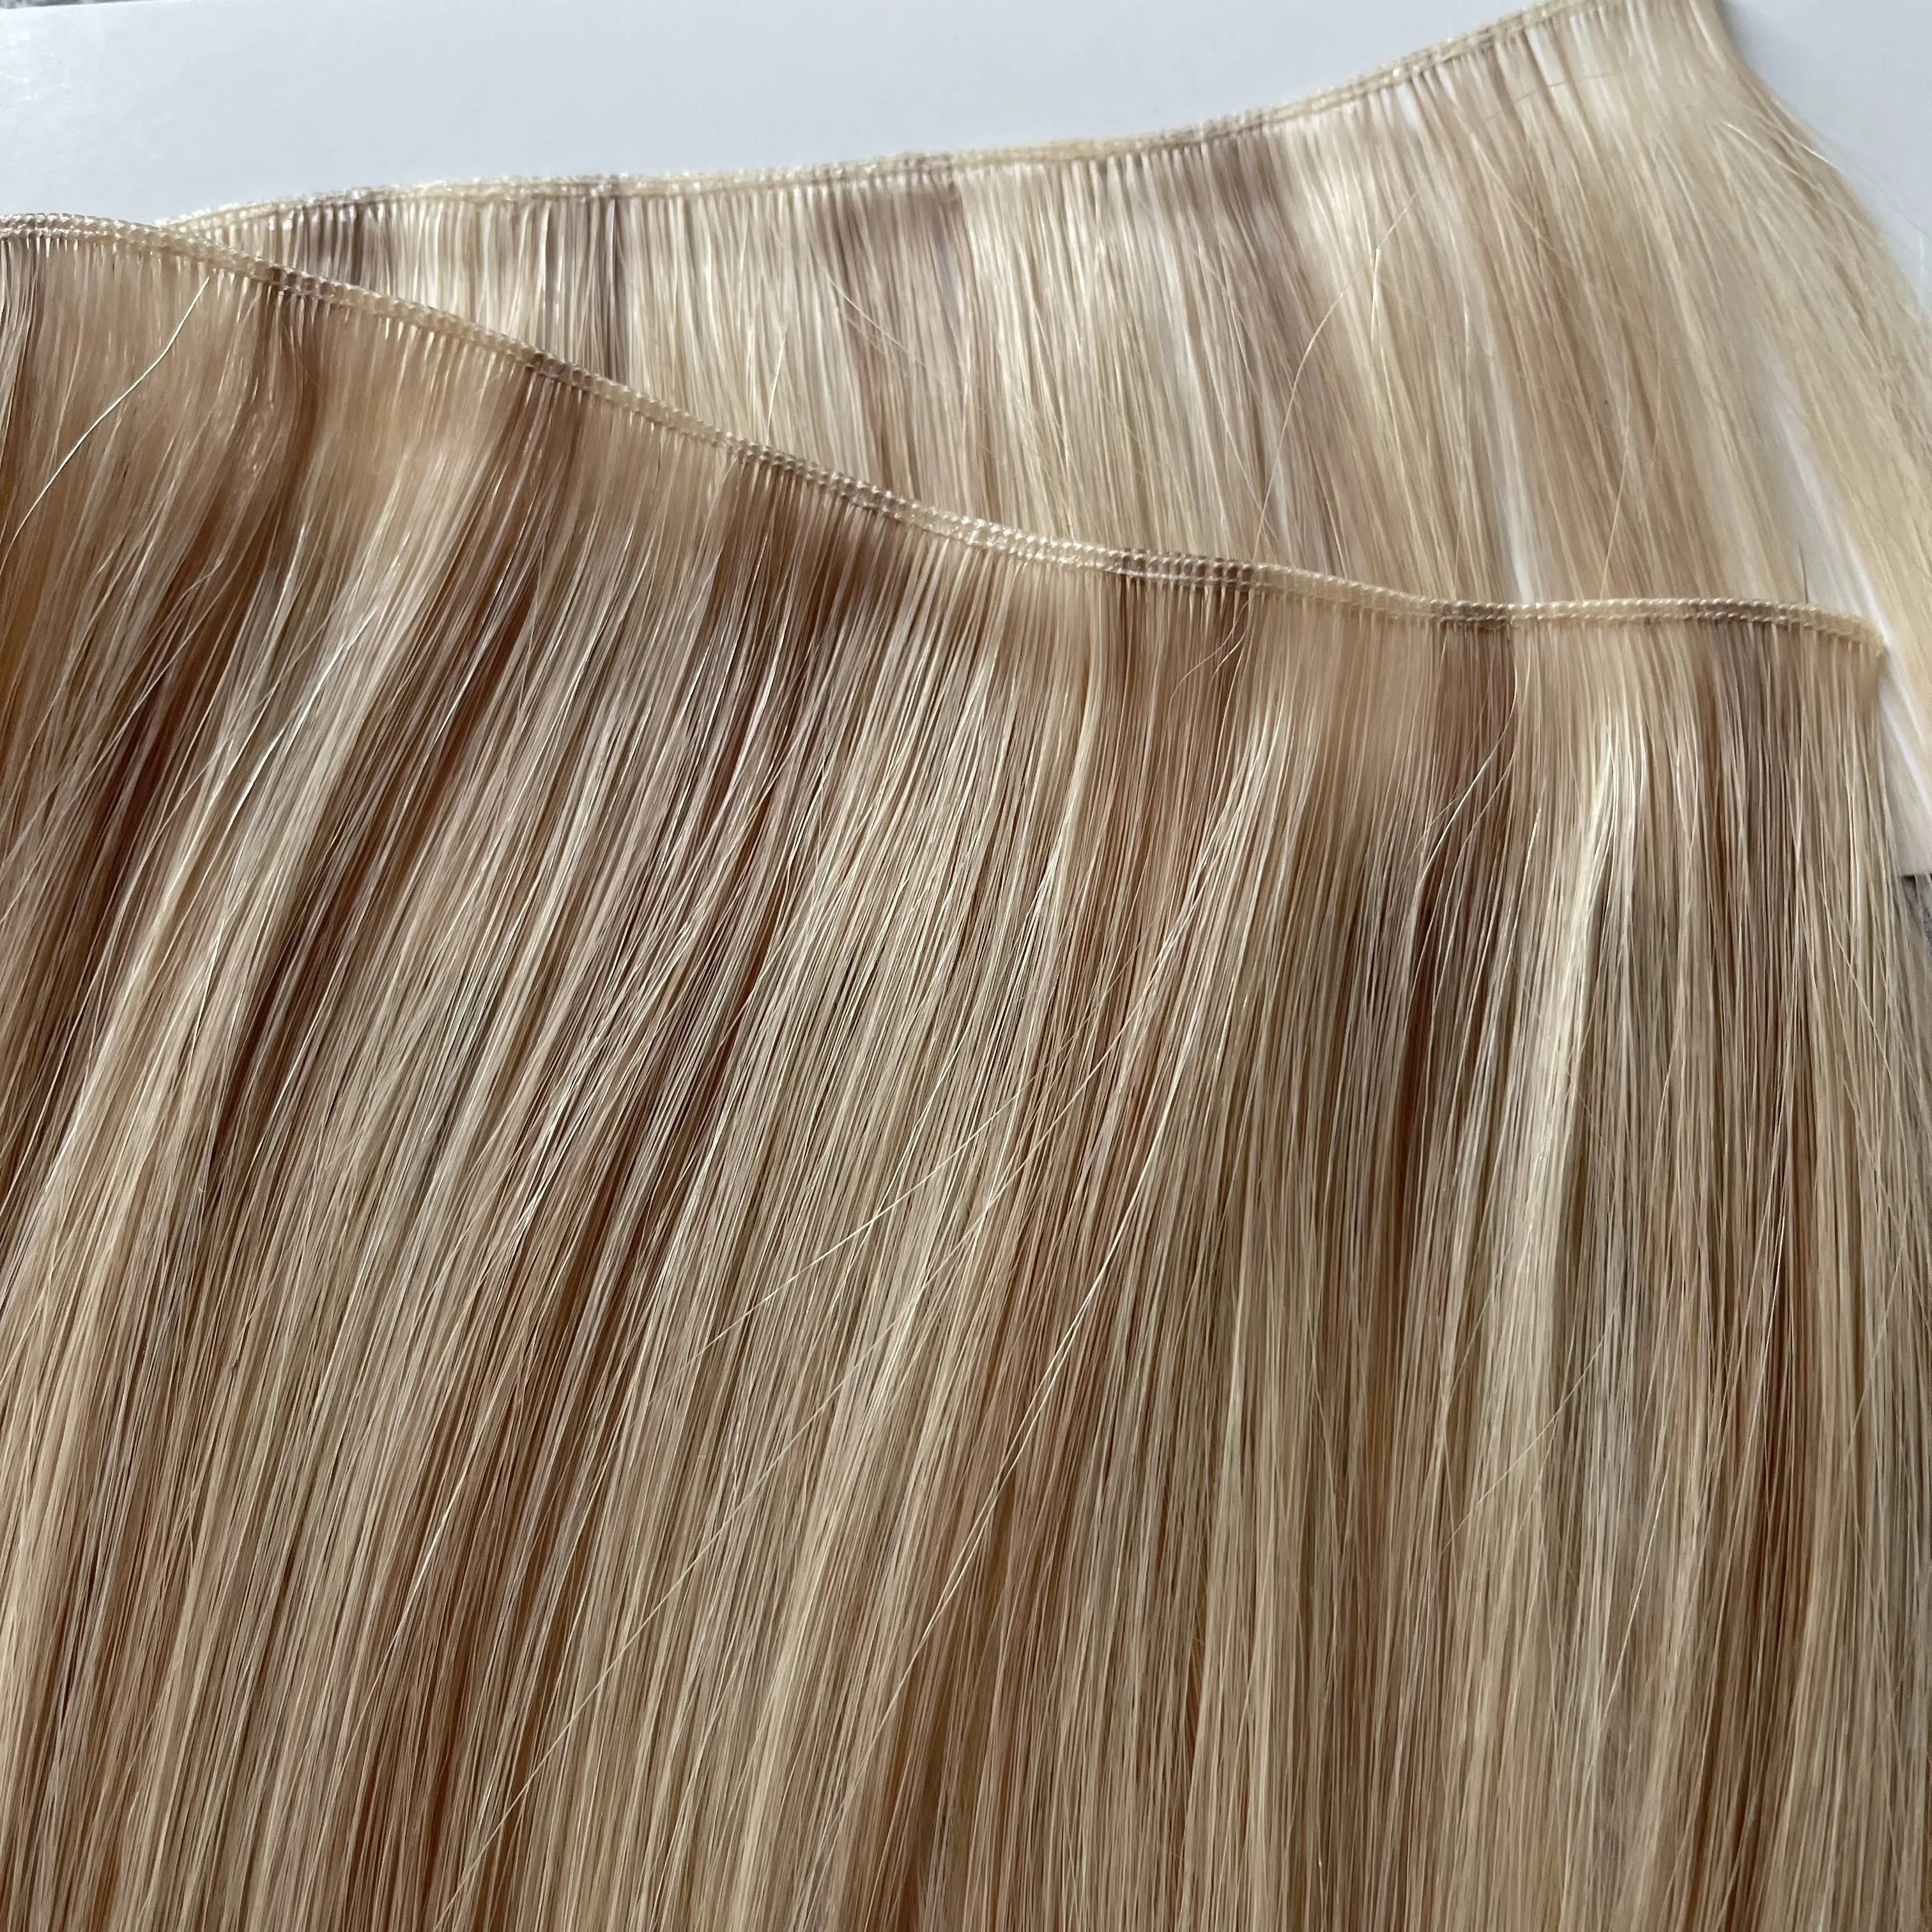 New Tinner Schuss Genius Schüsse Berühmte Salon Supply Double Drawn Nagel haut ausgerichtet Haar verlängerung Haar verlängerungen Russisches menschliches Haar